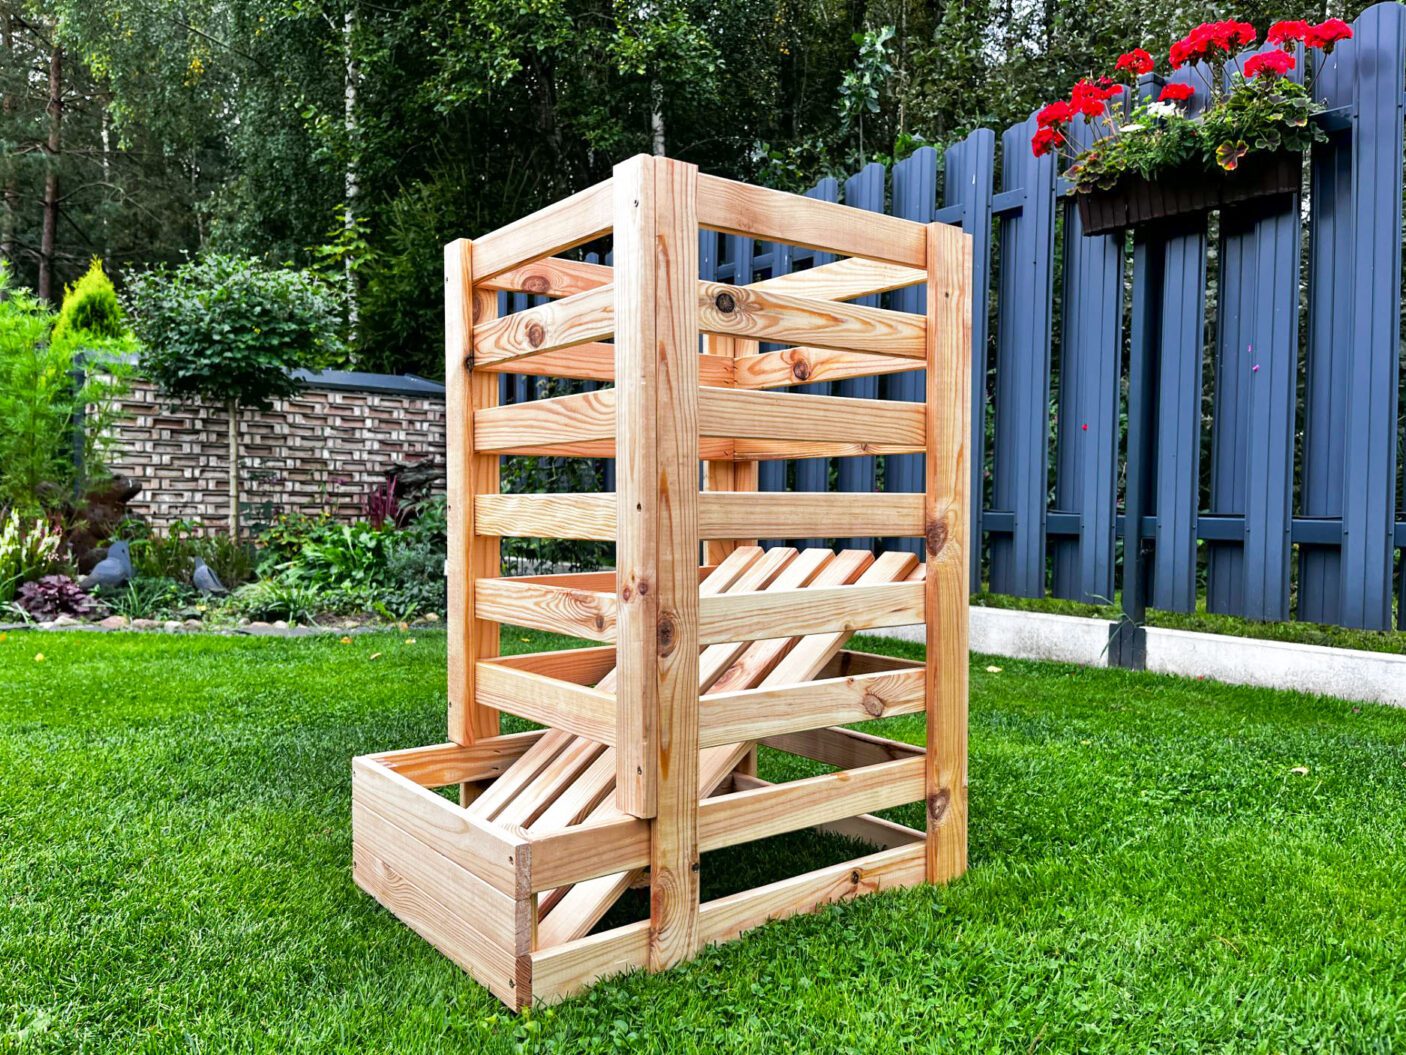 Medinė dėžė daržovėms sandėliuoti, 40x54x70 cm